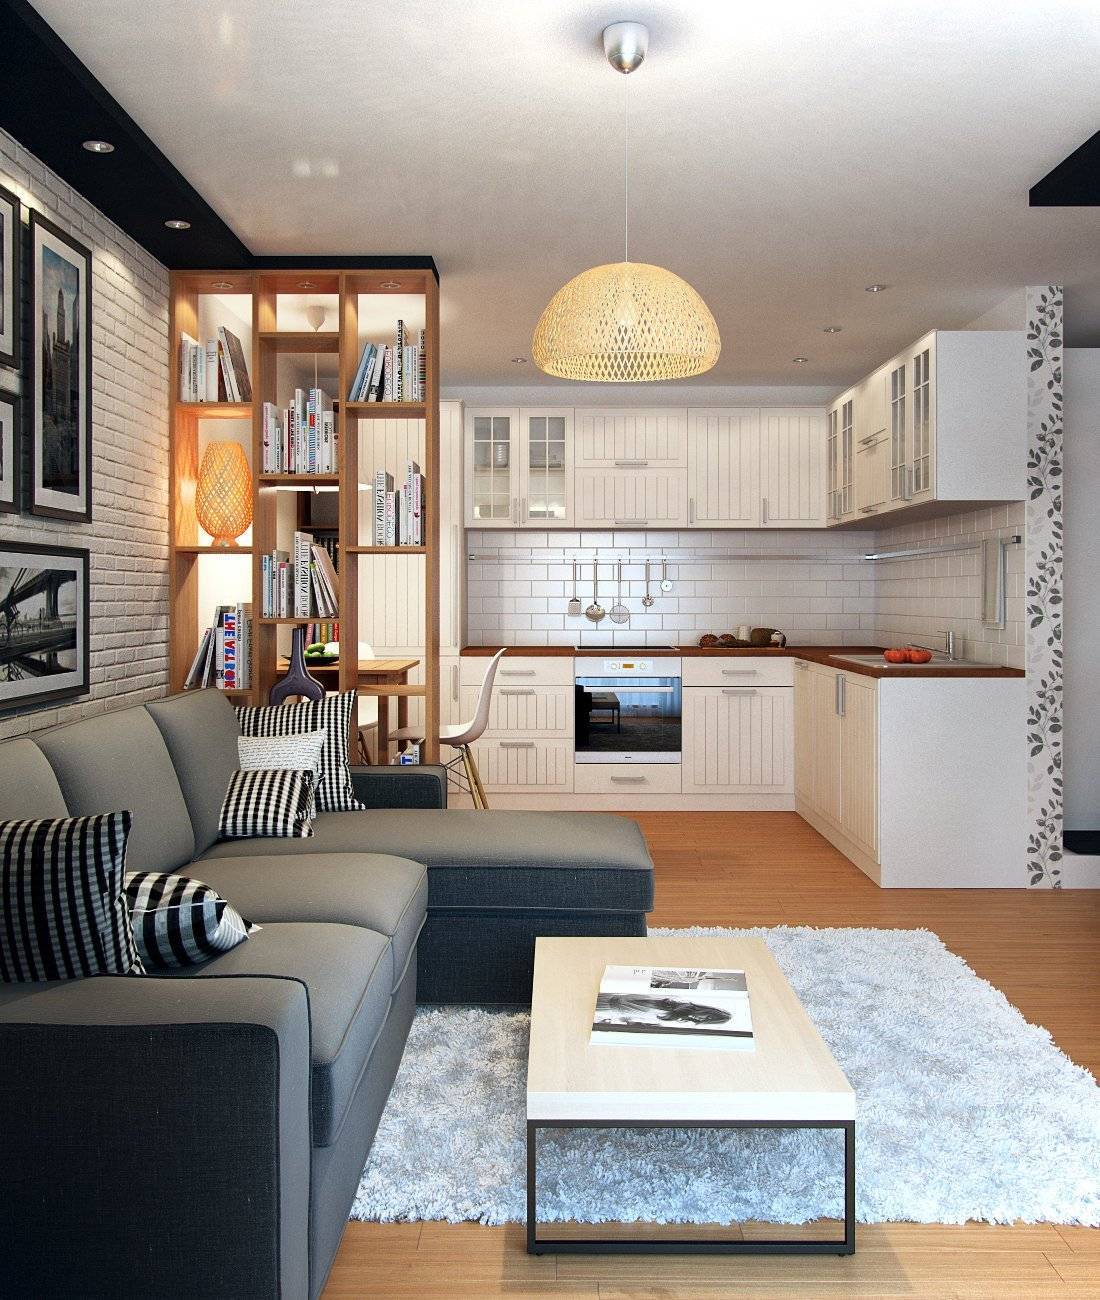 Кухня в студии 20 кв м: планировка кухонной комнаты и дизайн гарнитура